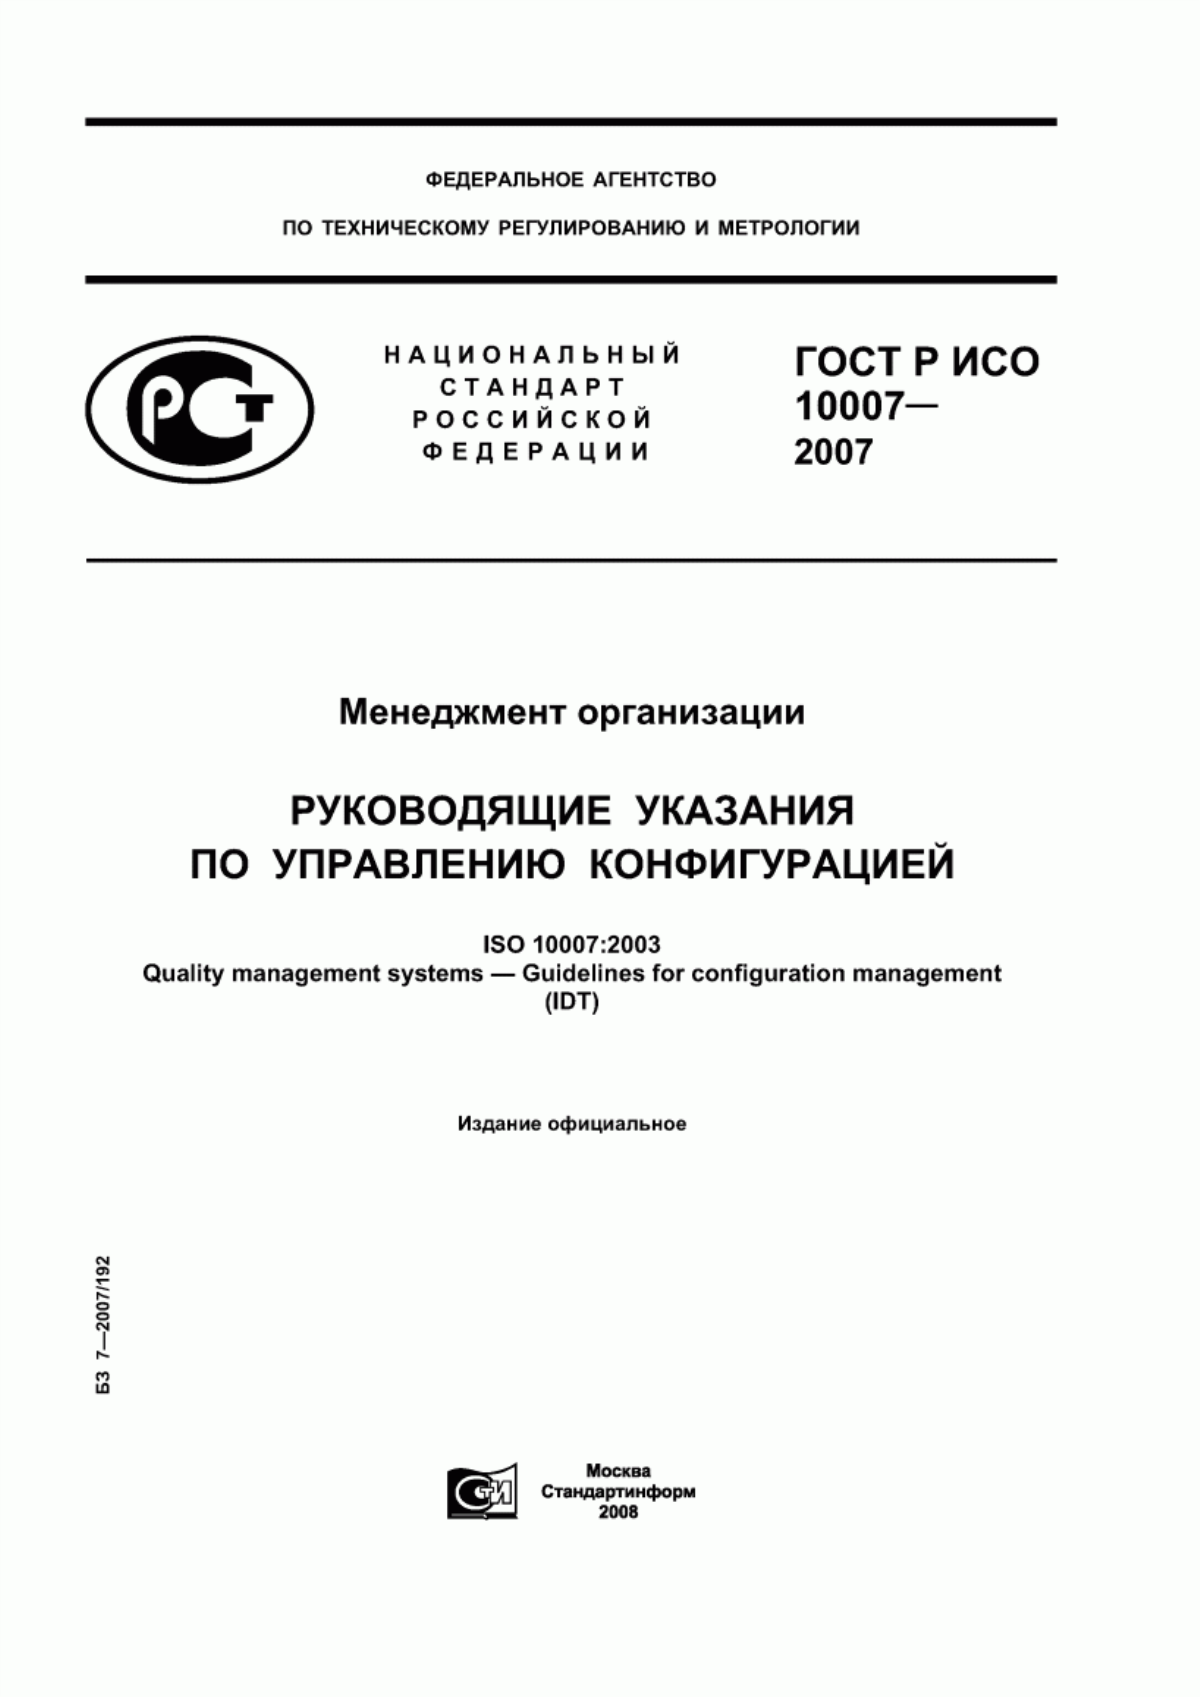 ГОСТ Р ИСО 10007-2007 Менеджмент организации. Руководящие указания по управлению конфигурацией